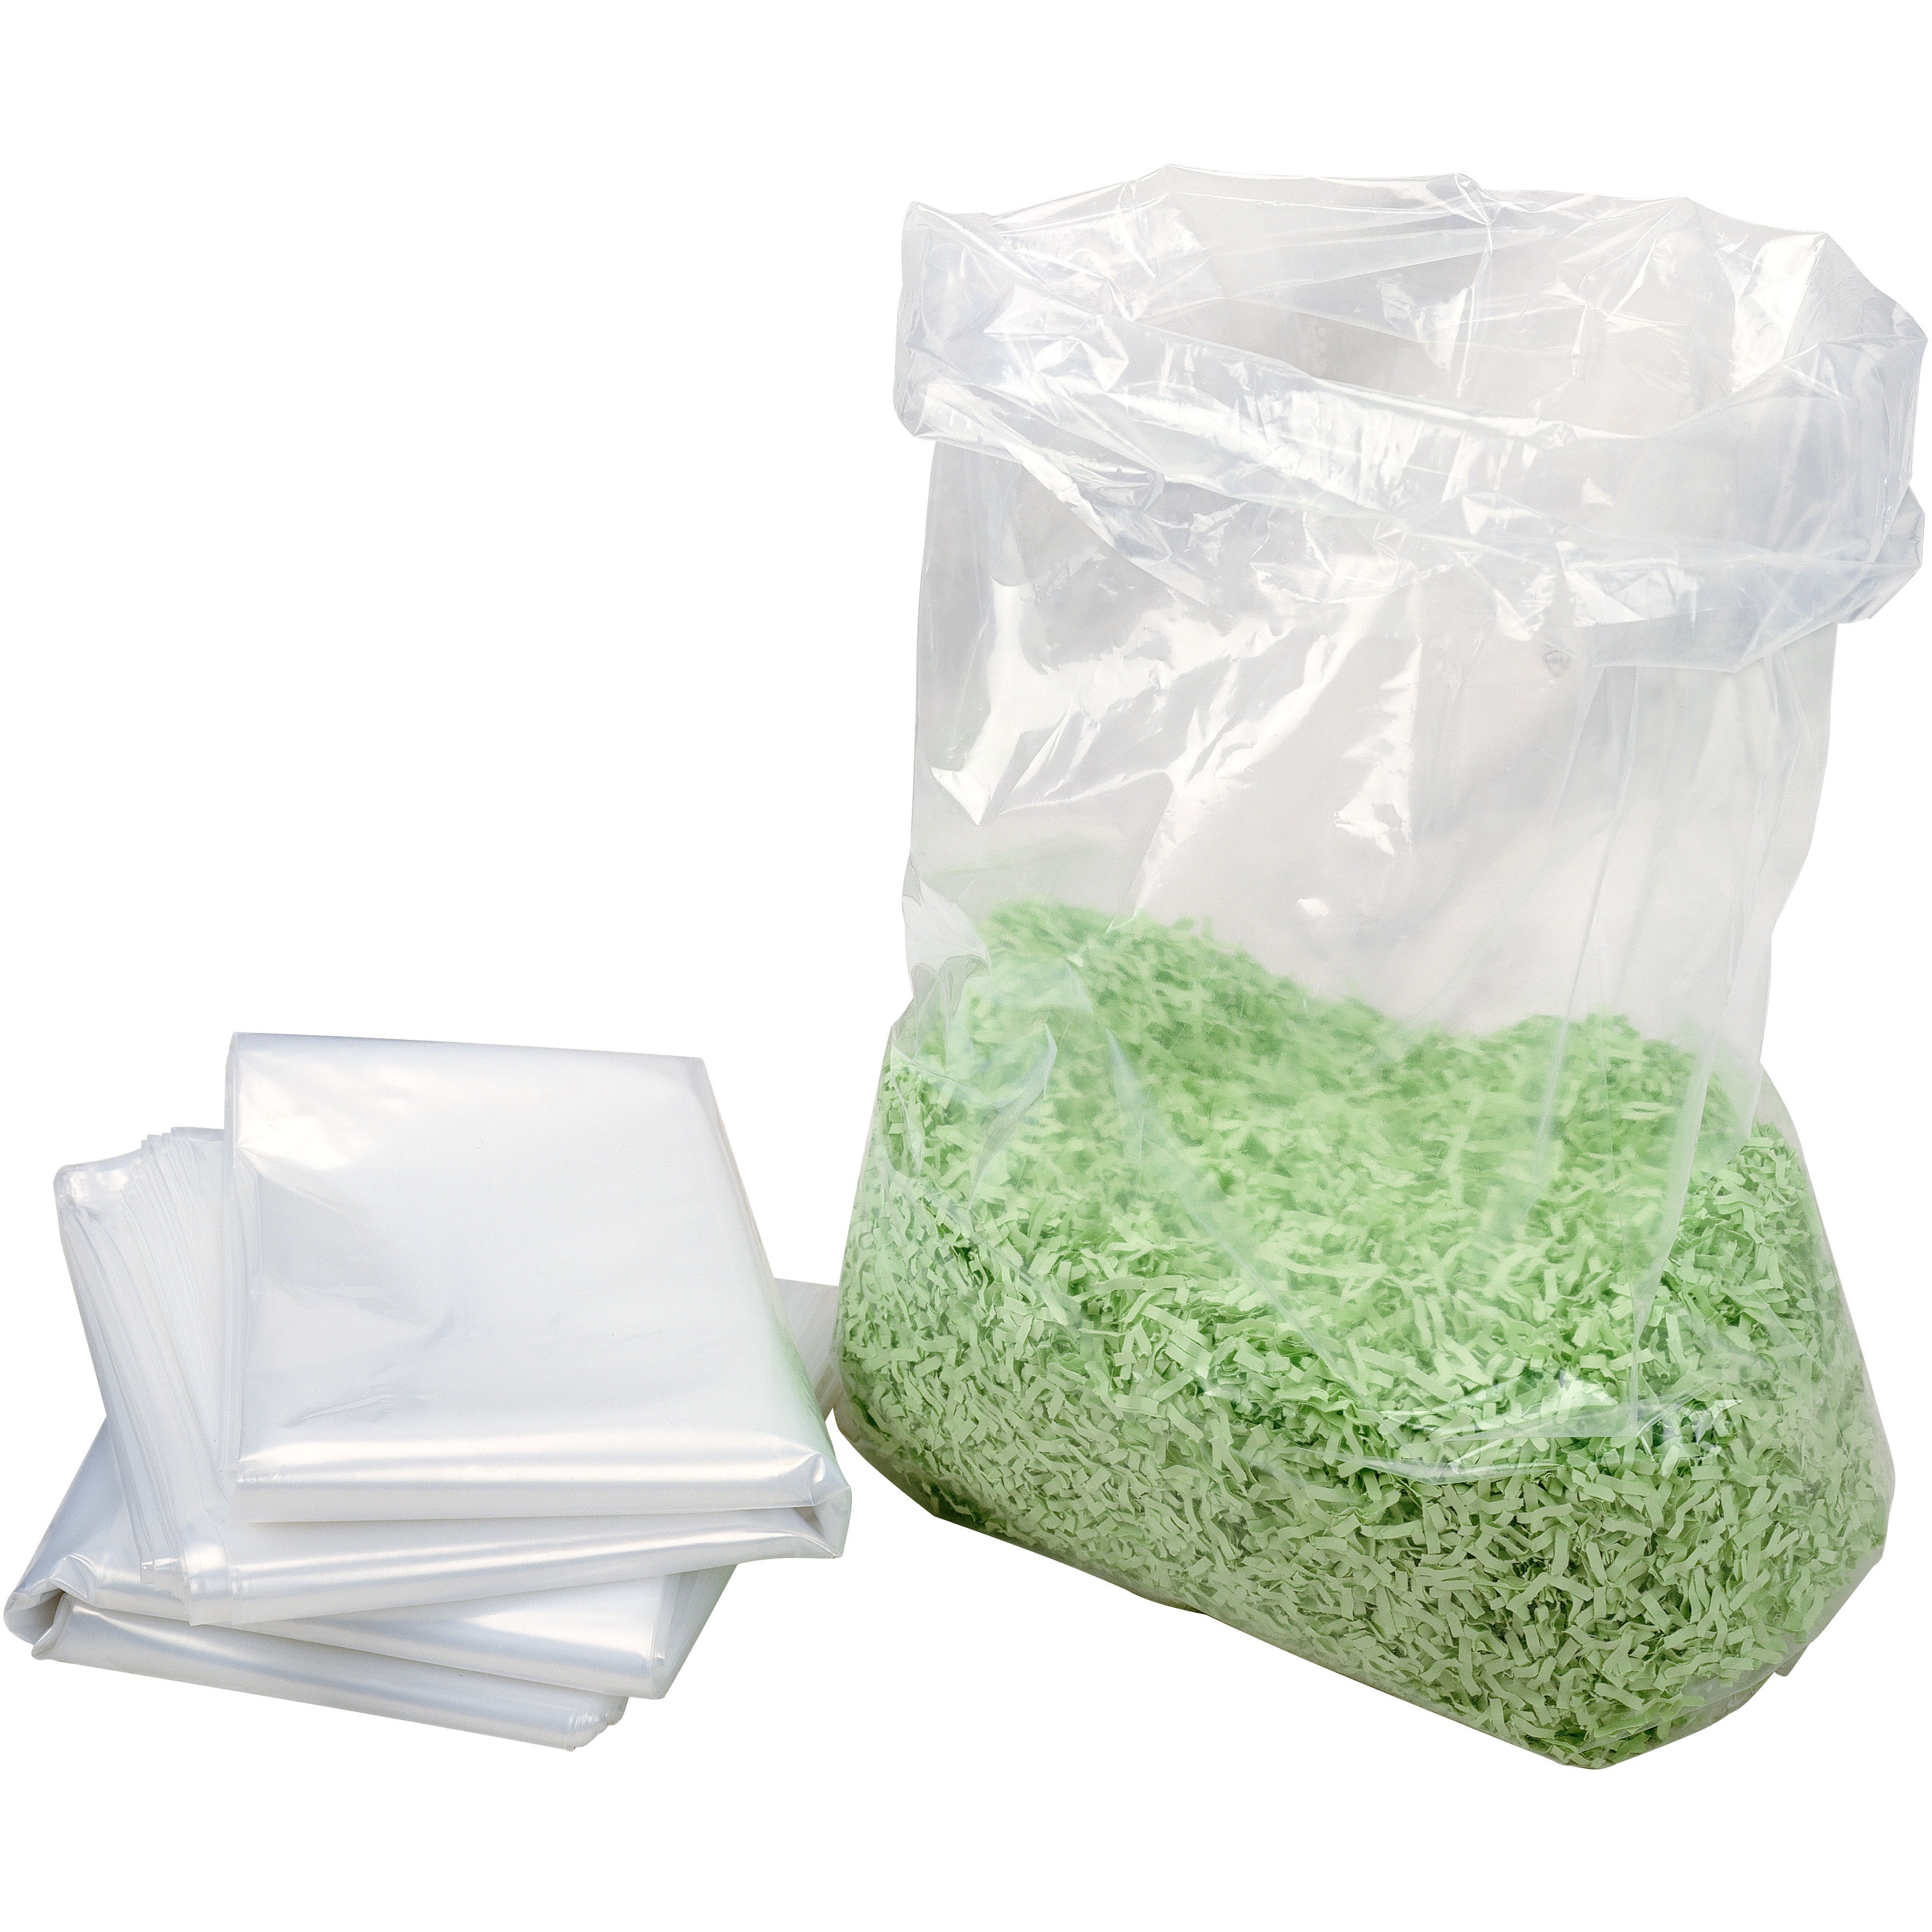 Image of HSM Plastic bags - fits HSM 8TE Baler